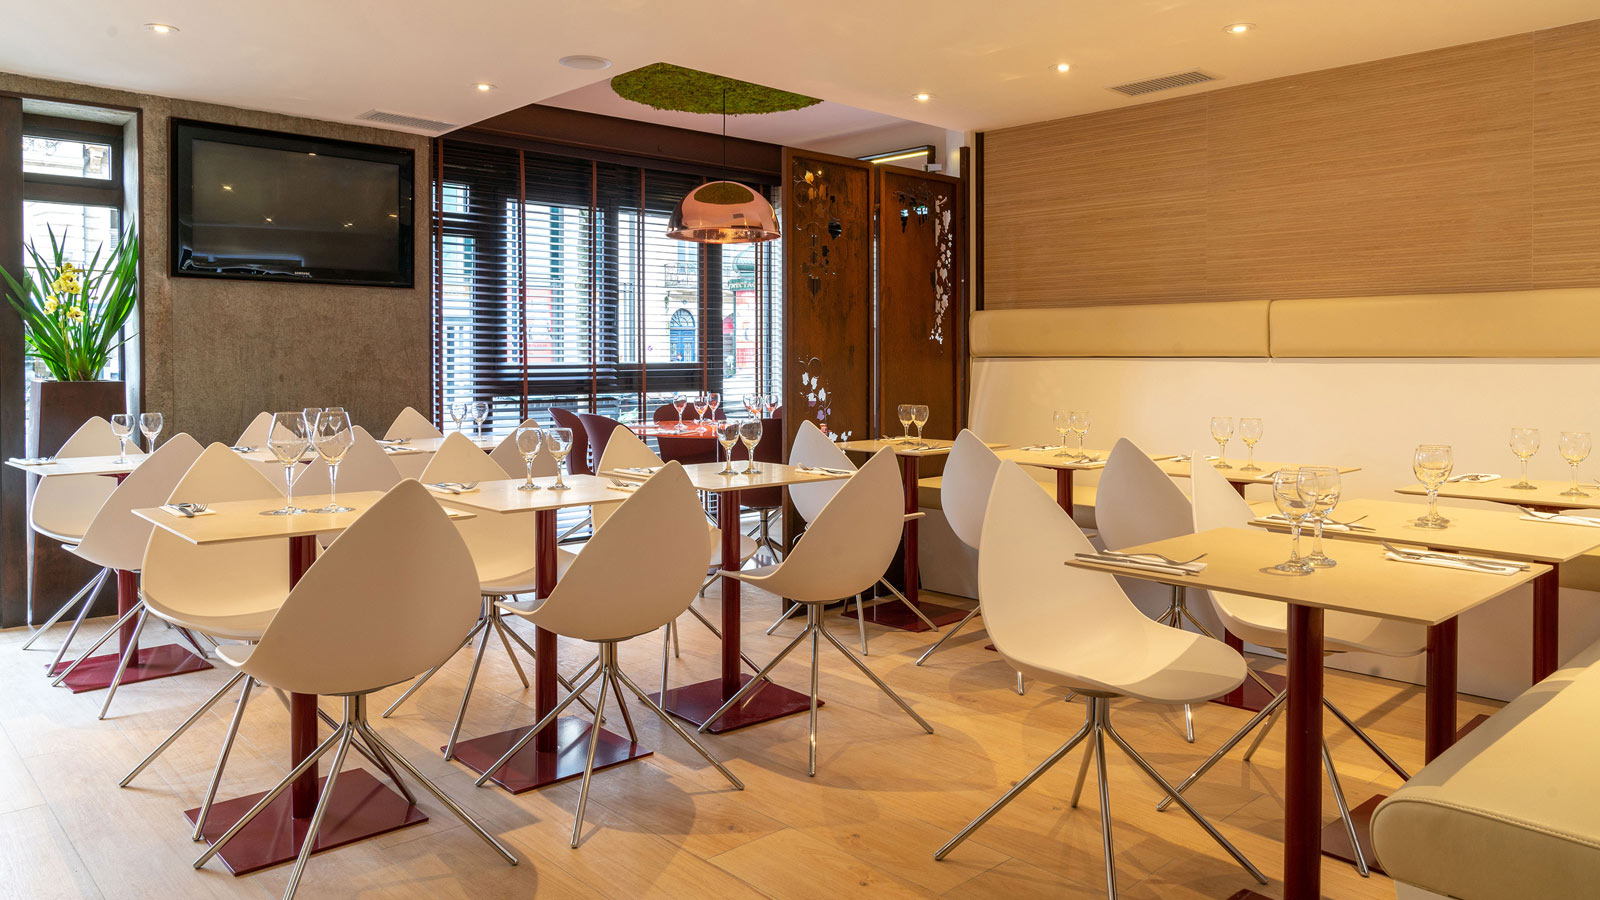 Проекты PORCELANOSA Grupo: ресторан Le Grand Café в Бордо украсился материалами концерна PORCELANOSA Grupo